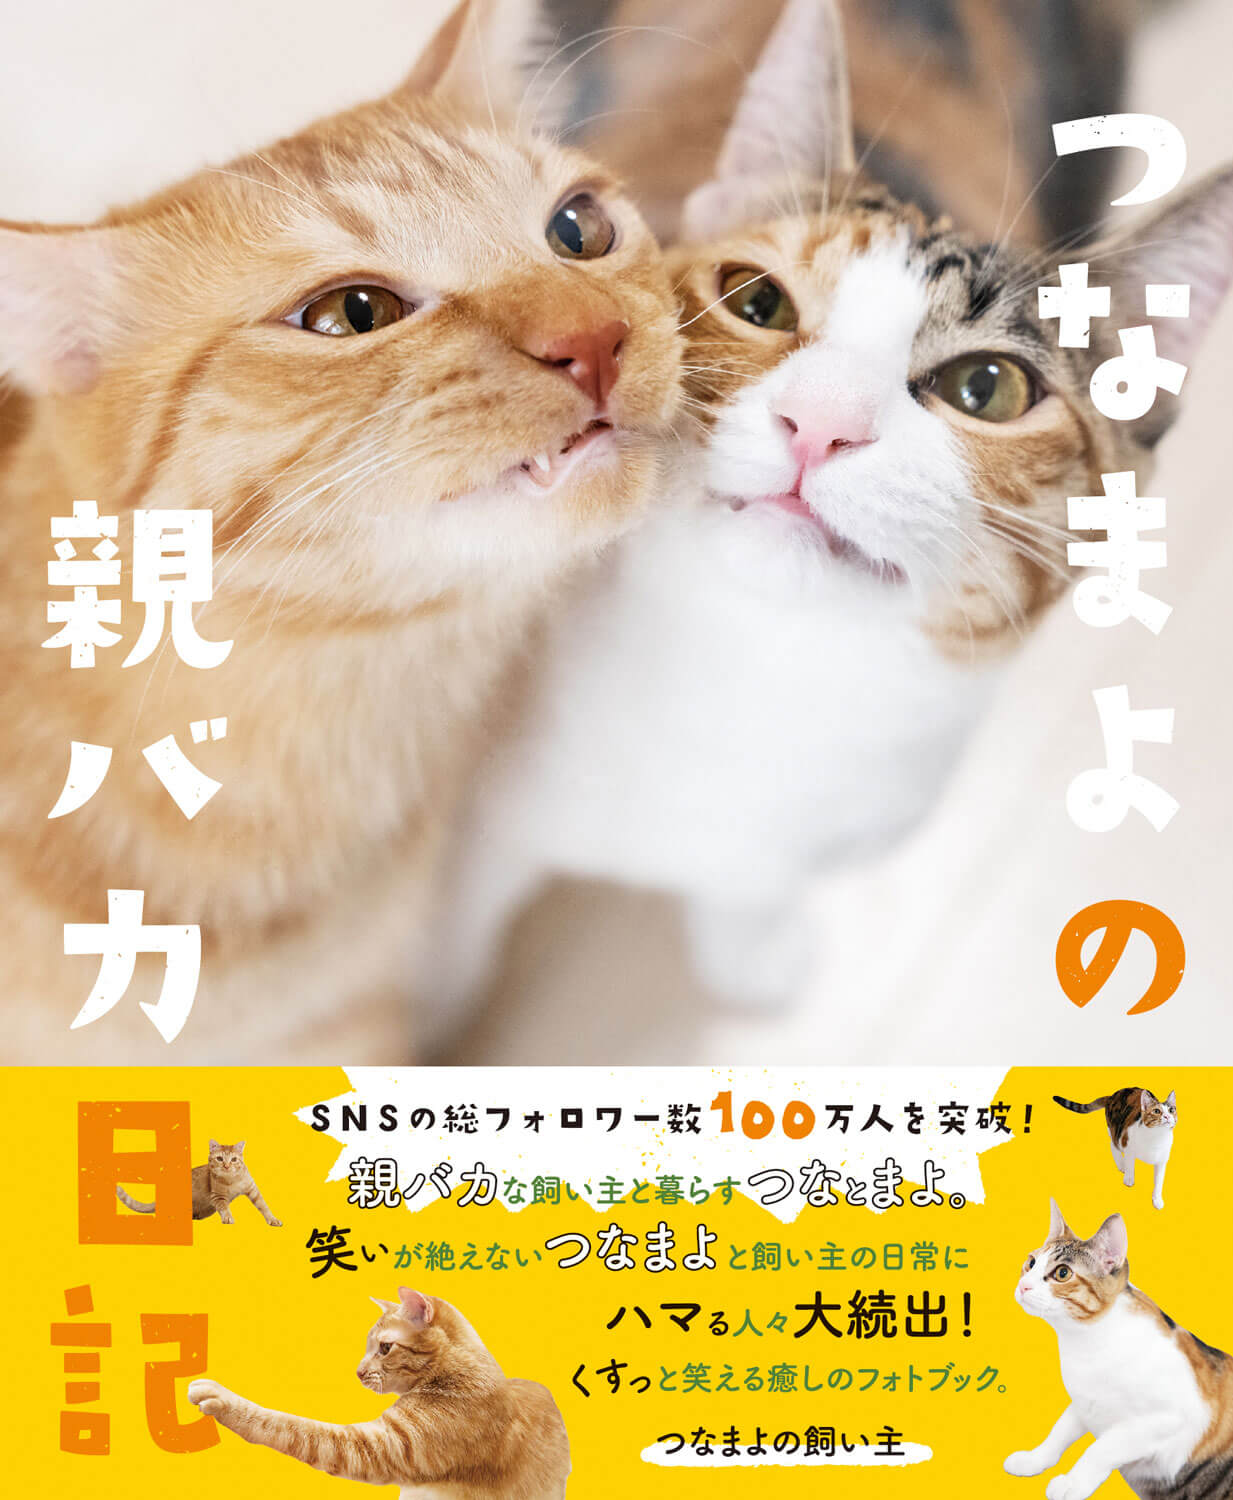 人気猫つなまよのフォトブック『つなまよの親バカ日記』表紙イメージ